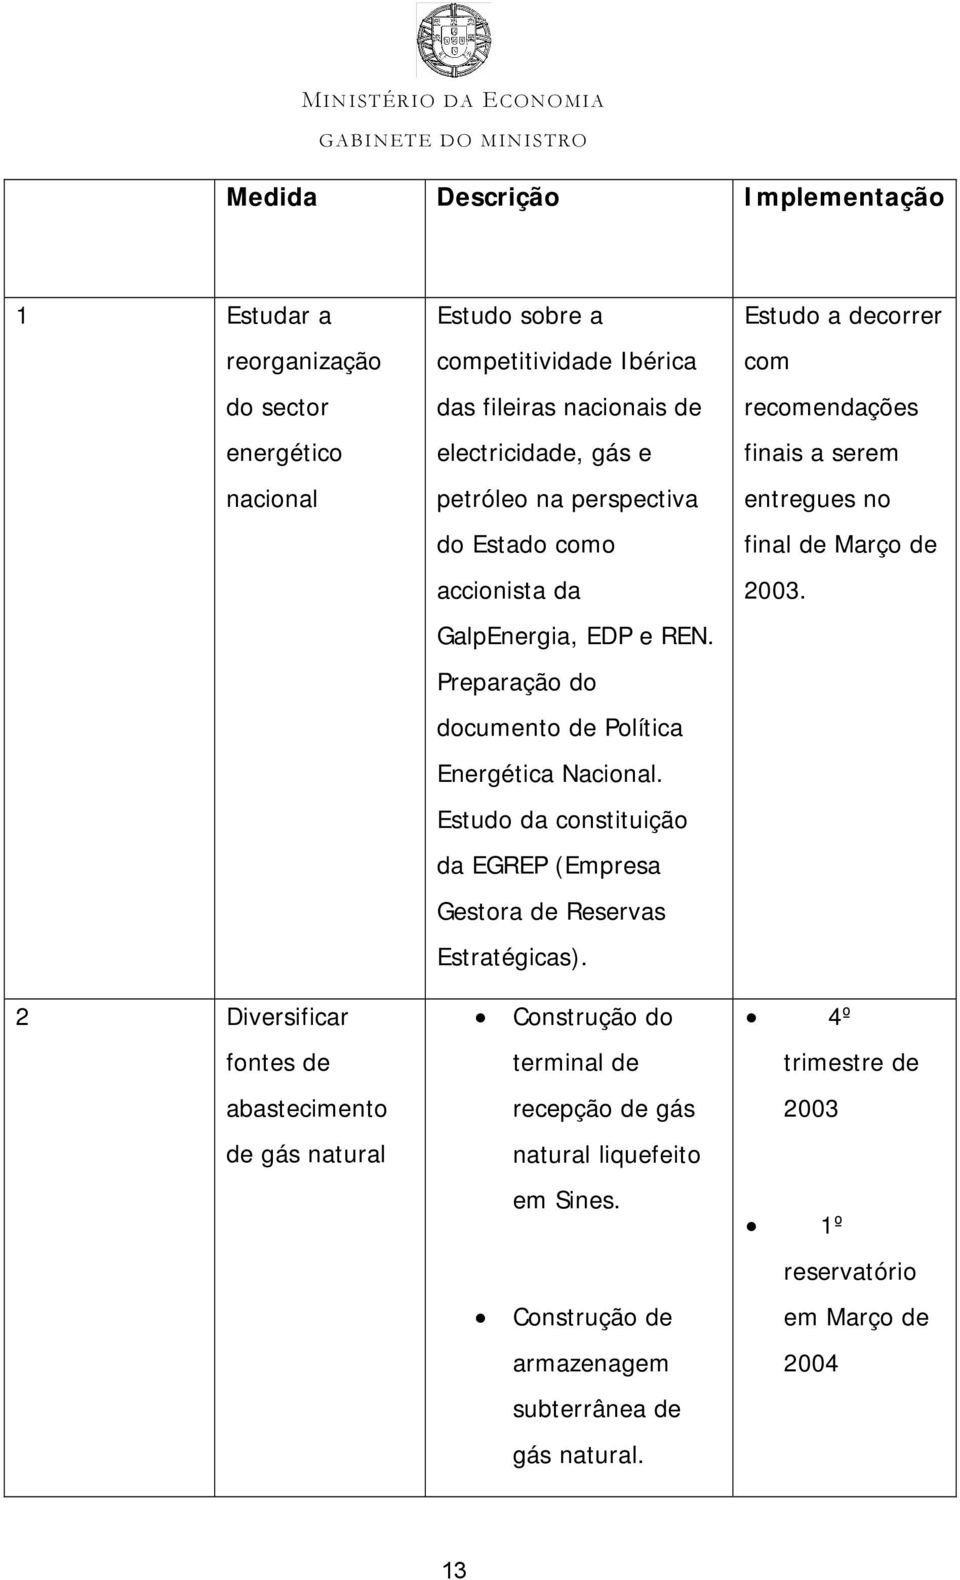 Estudo da constituição da EGREP (Empresa Gestora de Reservas Estratégicas). Construção do terminal de recepção de gás natural liquefeito em Sines.